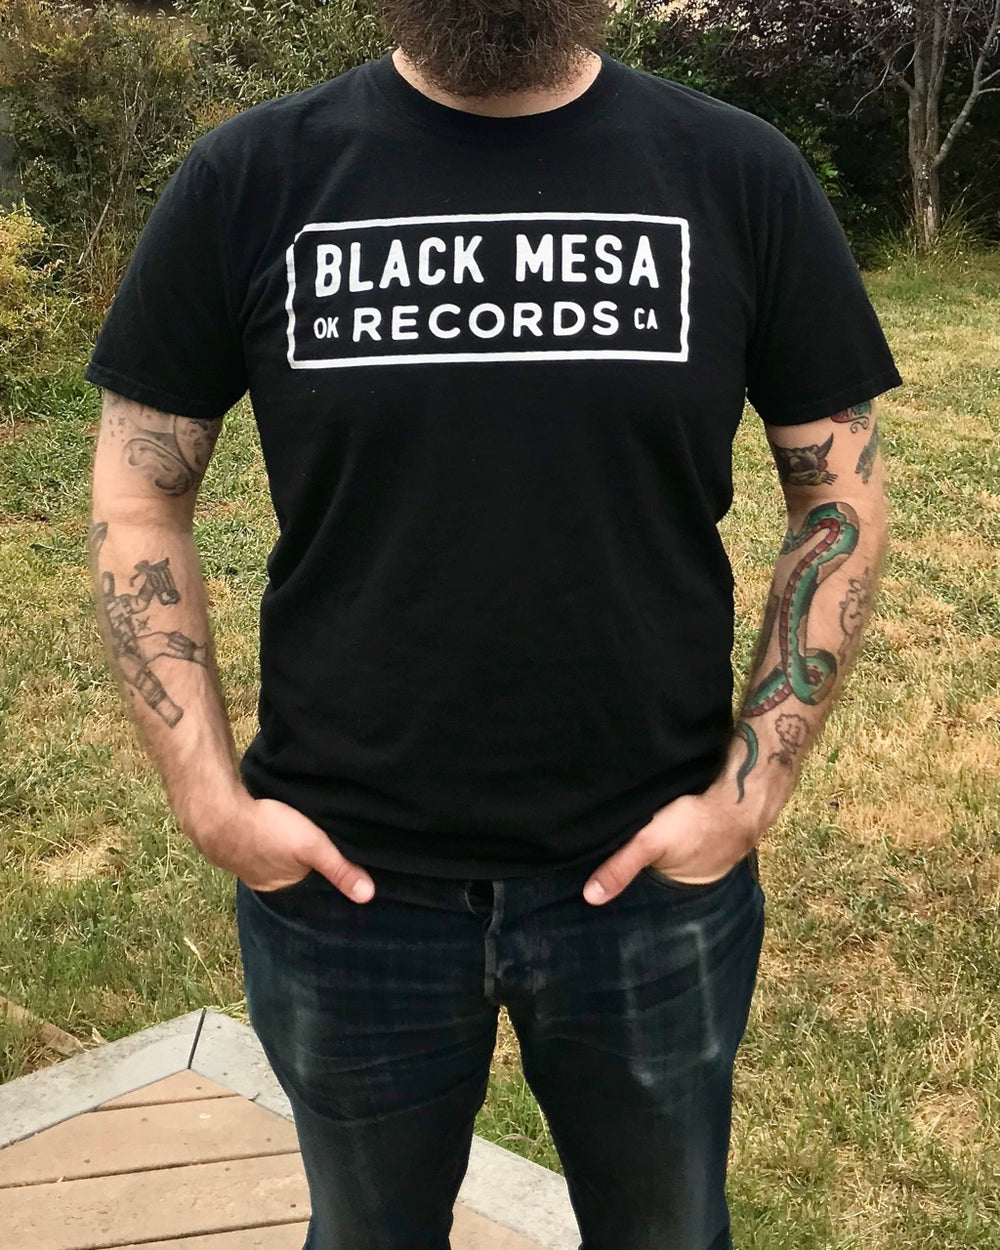 Black Mesa Records - Black Mesa Records “OK CA” T-Shirt - Black Mesa Records